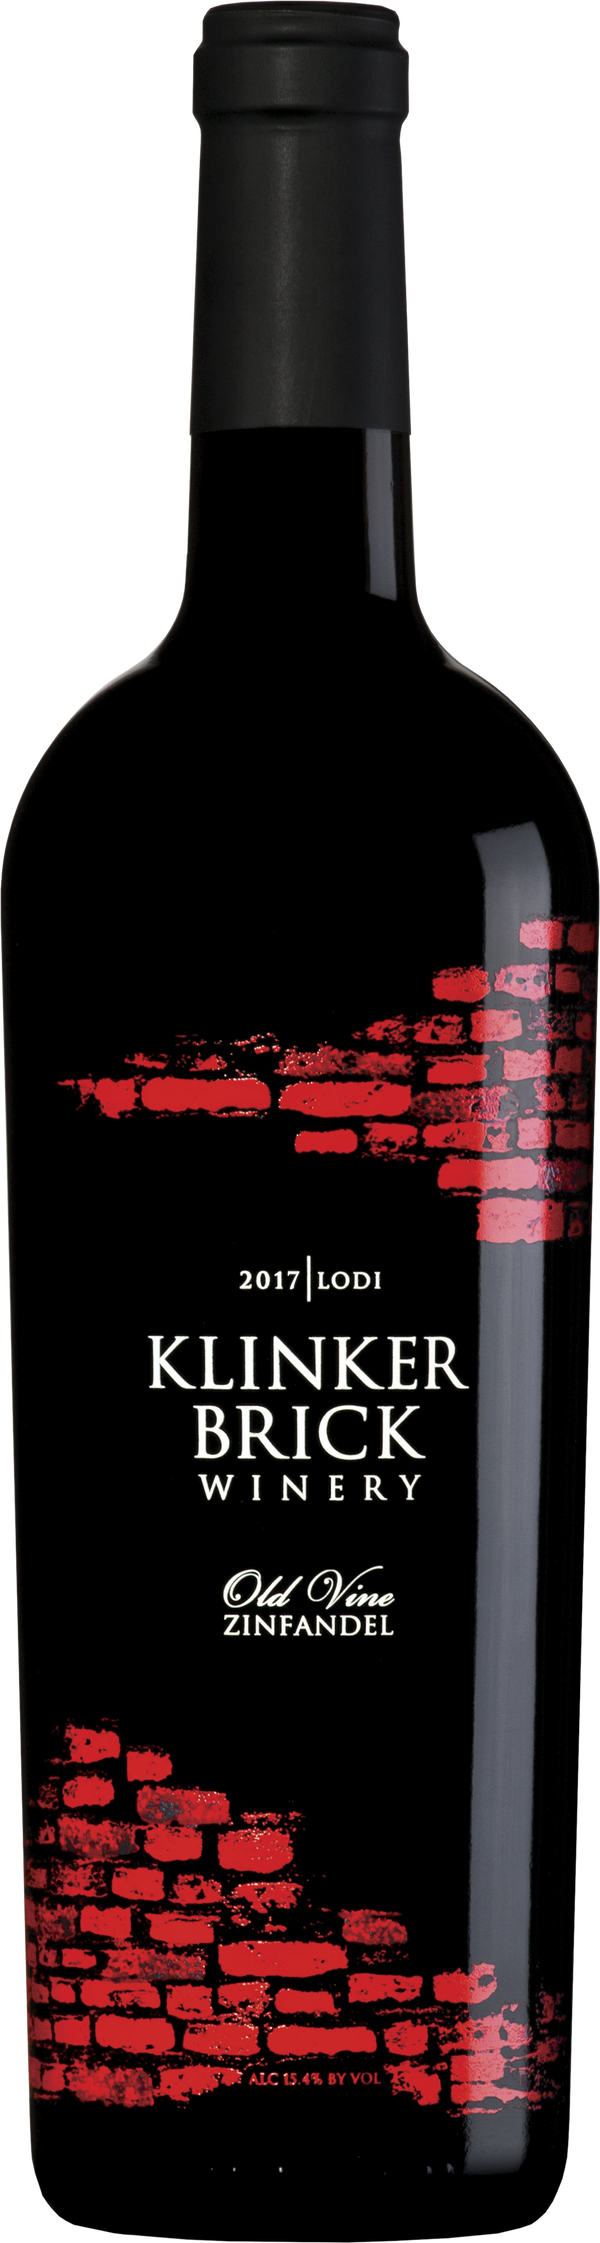 Klinker Brick Old Vine Zinfandel 2017